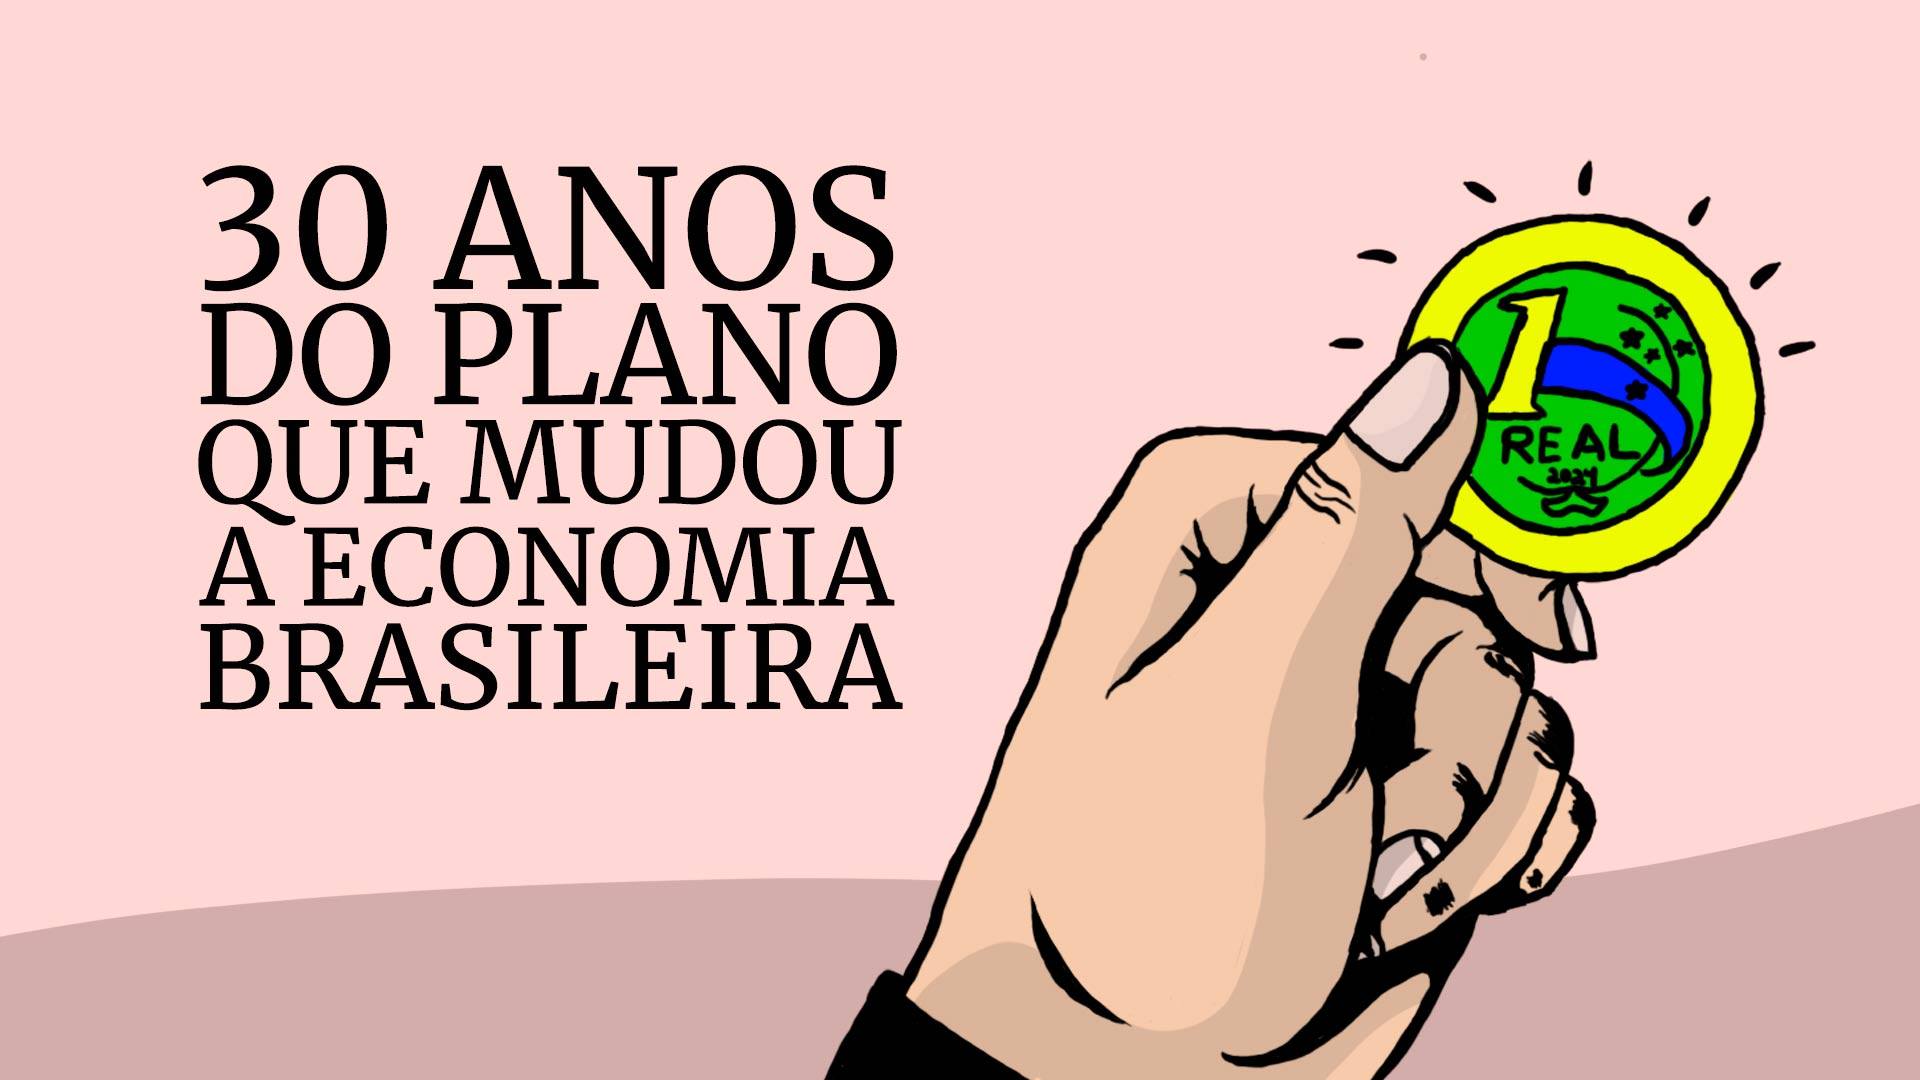 Imagem colorida de mão segurando uma moeda de um real, com o texto "30 anos do plano que mudou a economia brasileira" - Metrópoles